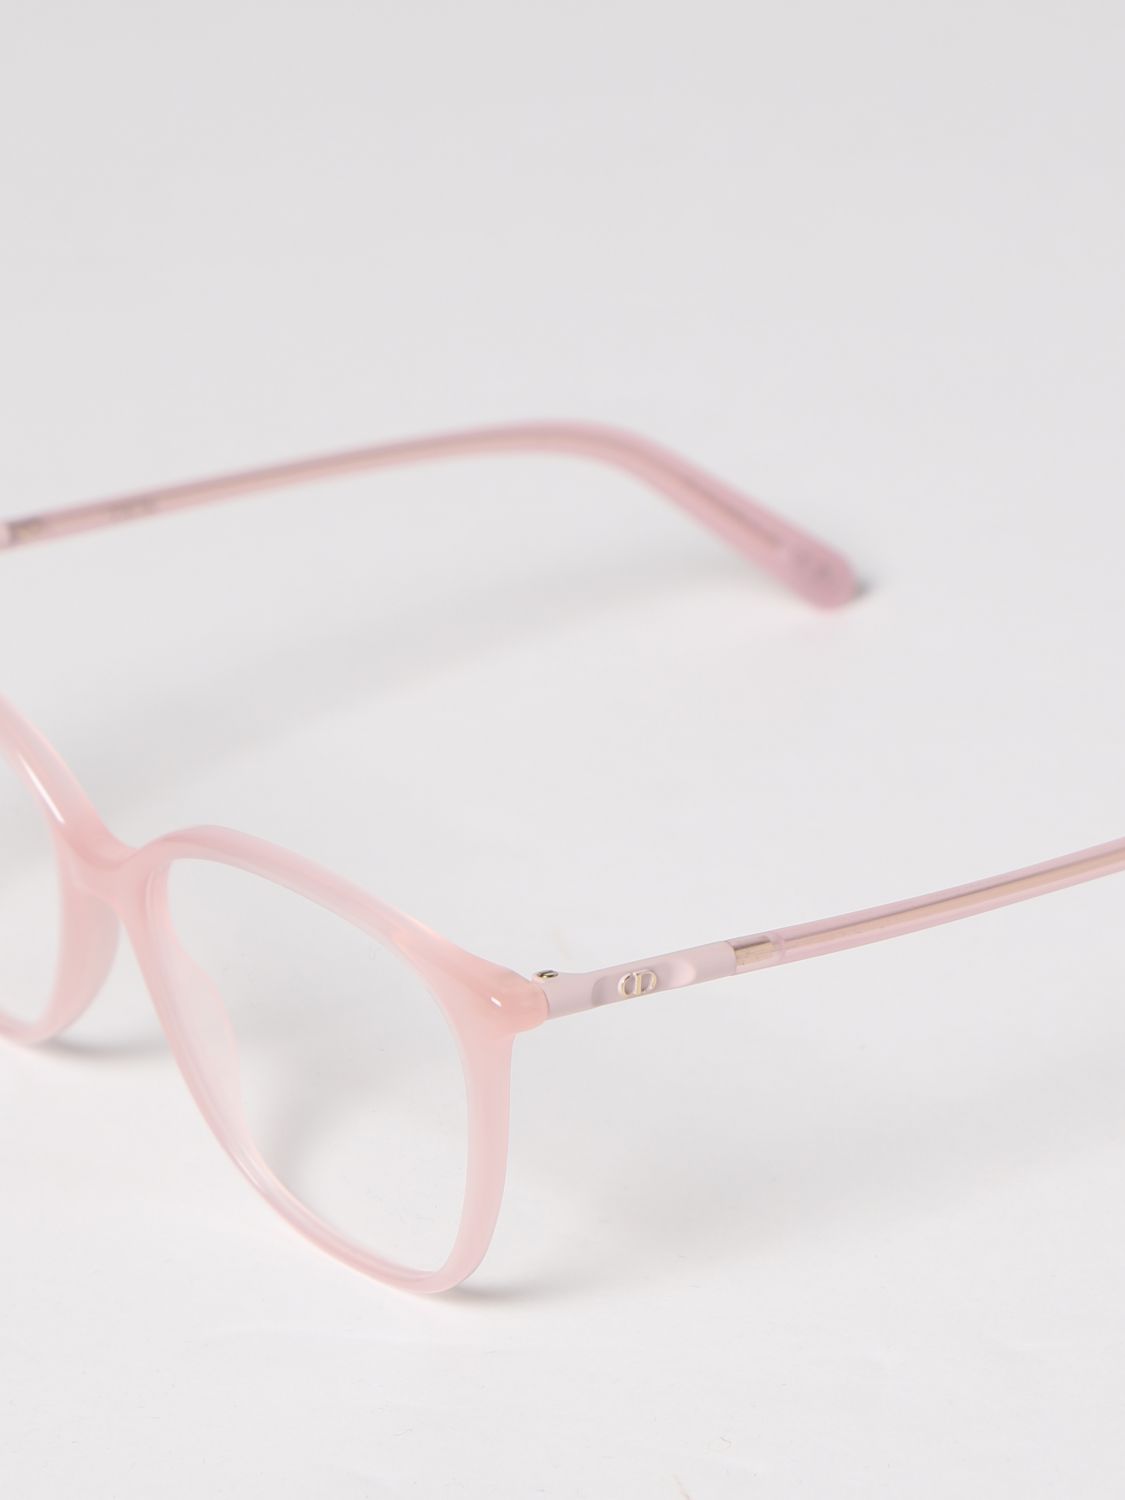 Wildior S 2 U Sunglasses in Pink  Dior Eyewear  Mytheresa